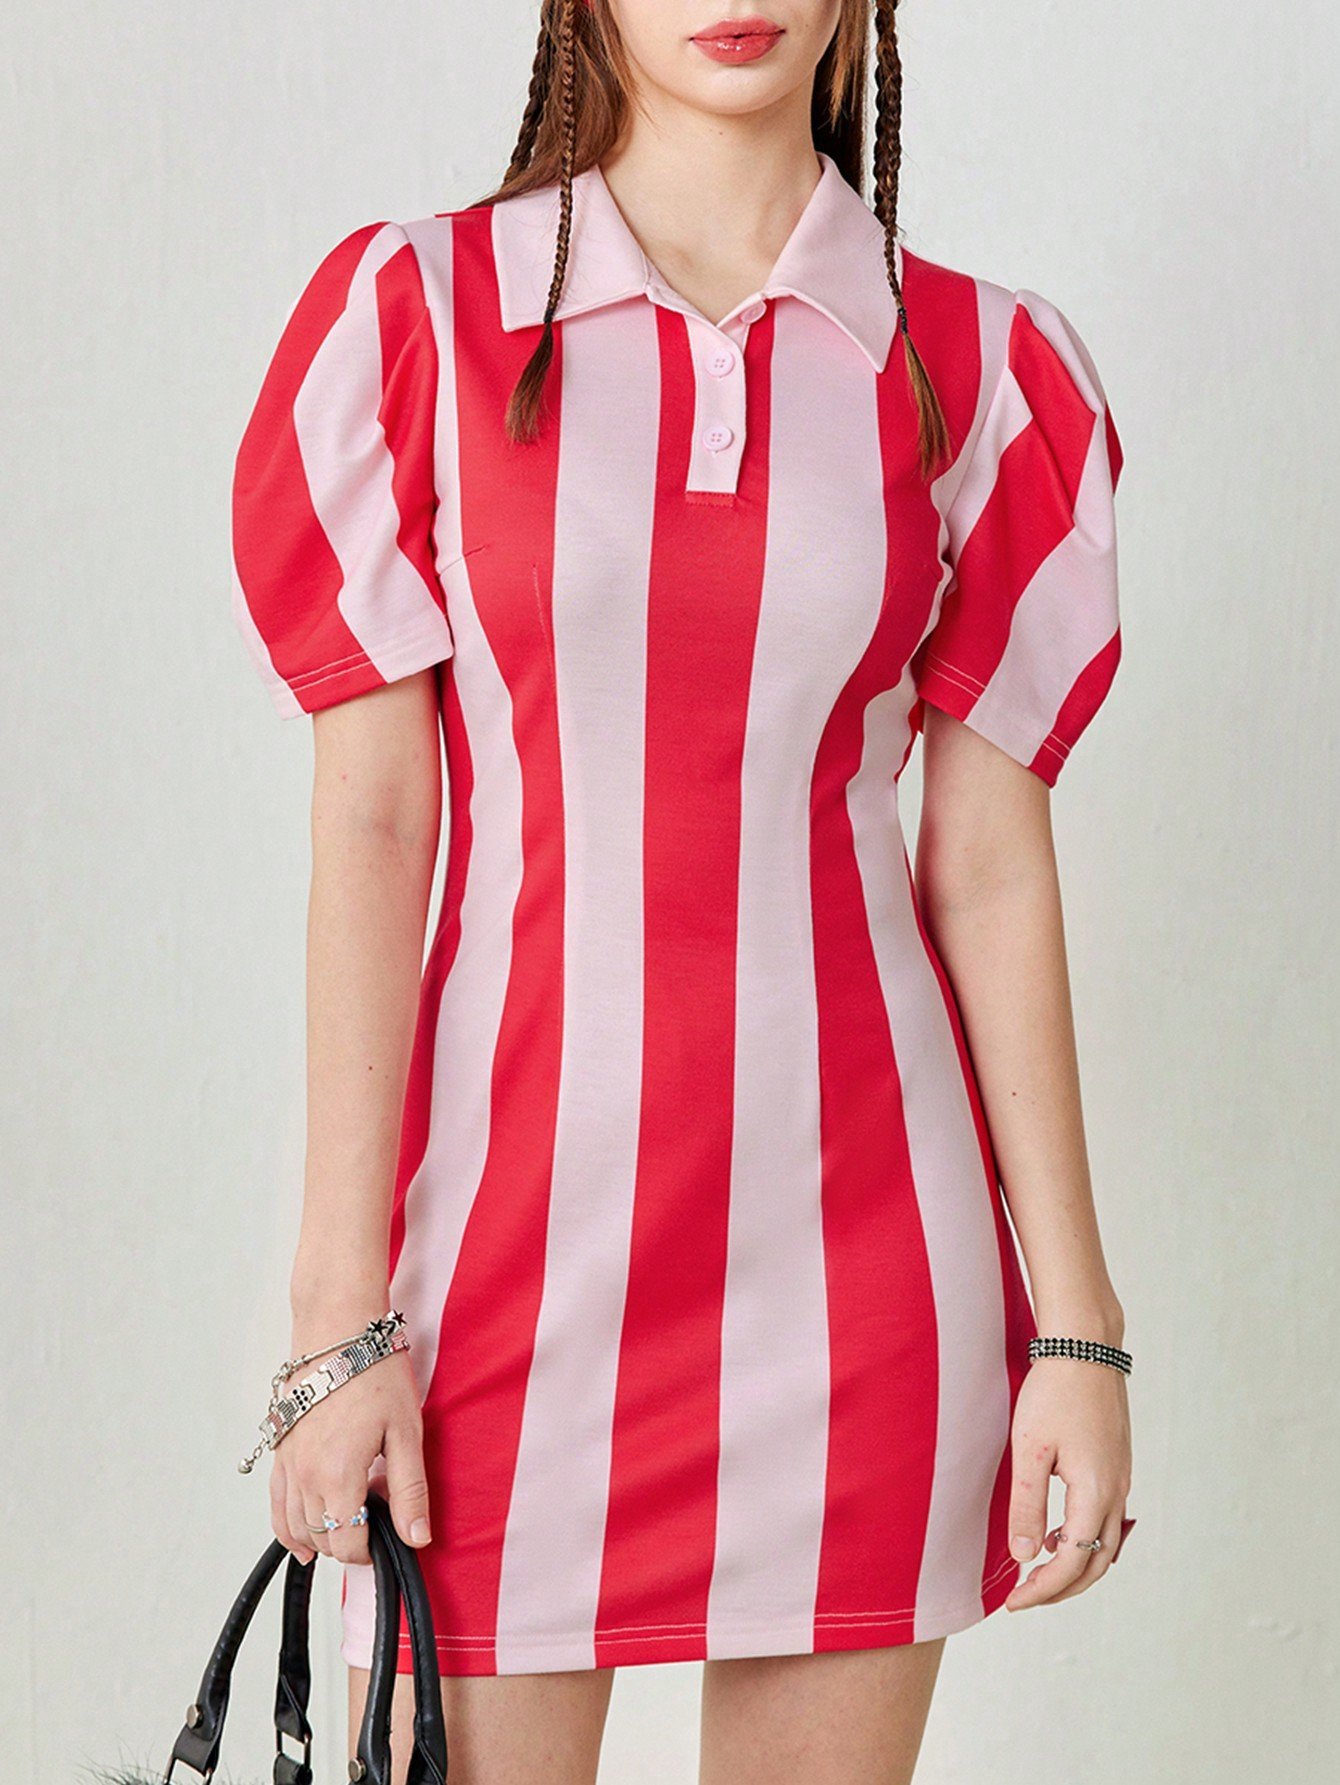 SHEIN Neu 女性用ポロネックショート丈 ワイドストライプTシャツドレス